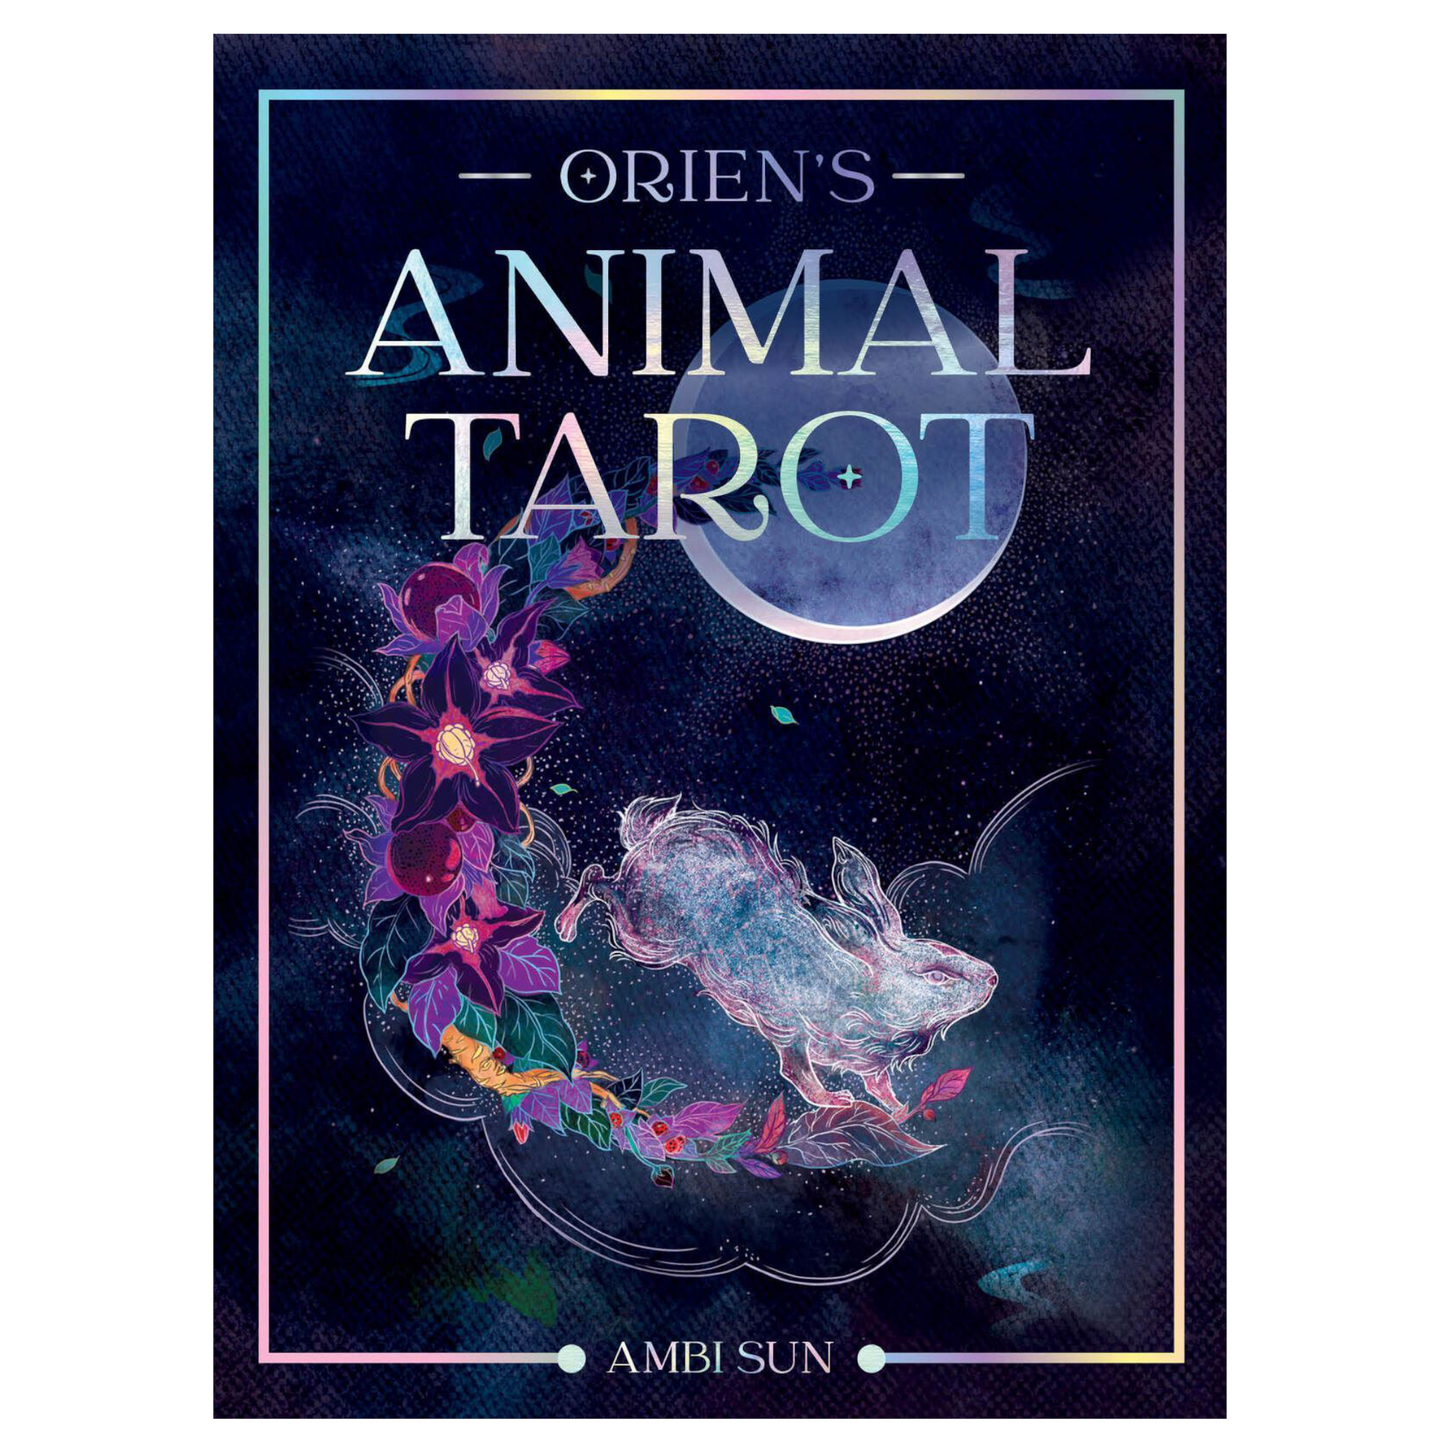 Orien's Animal Tarot